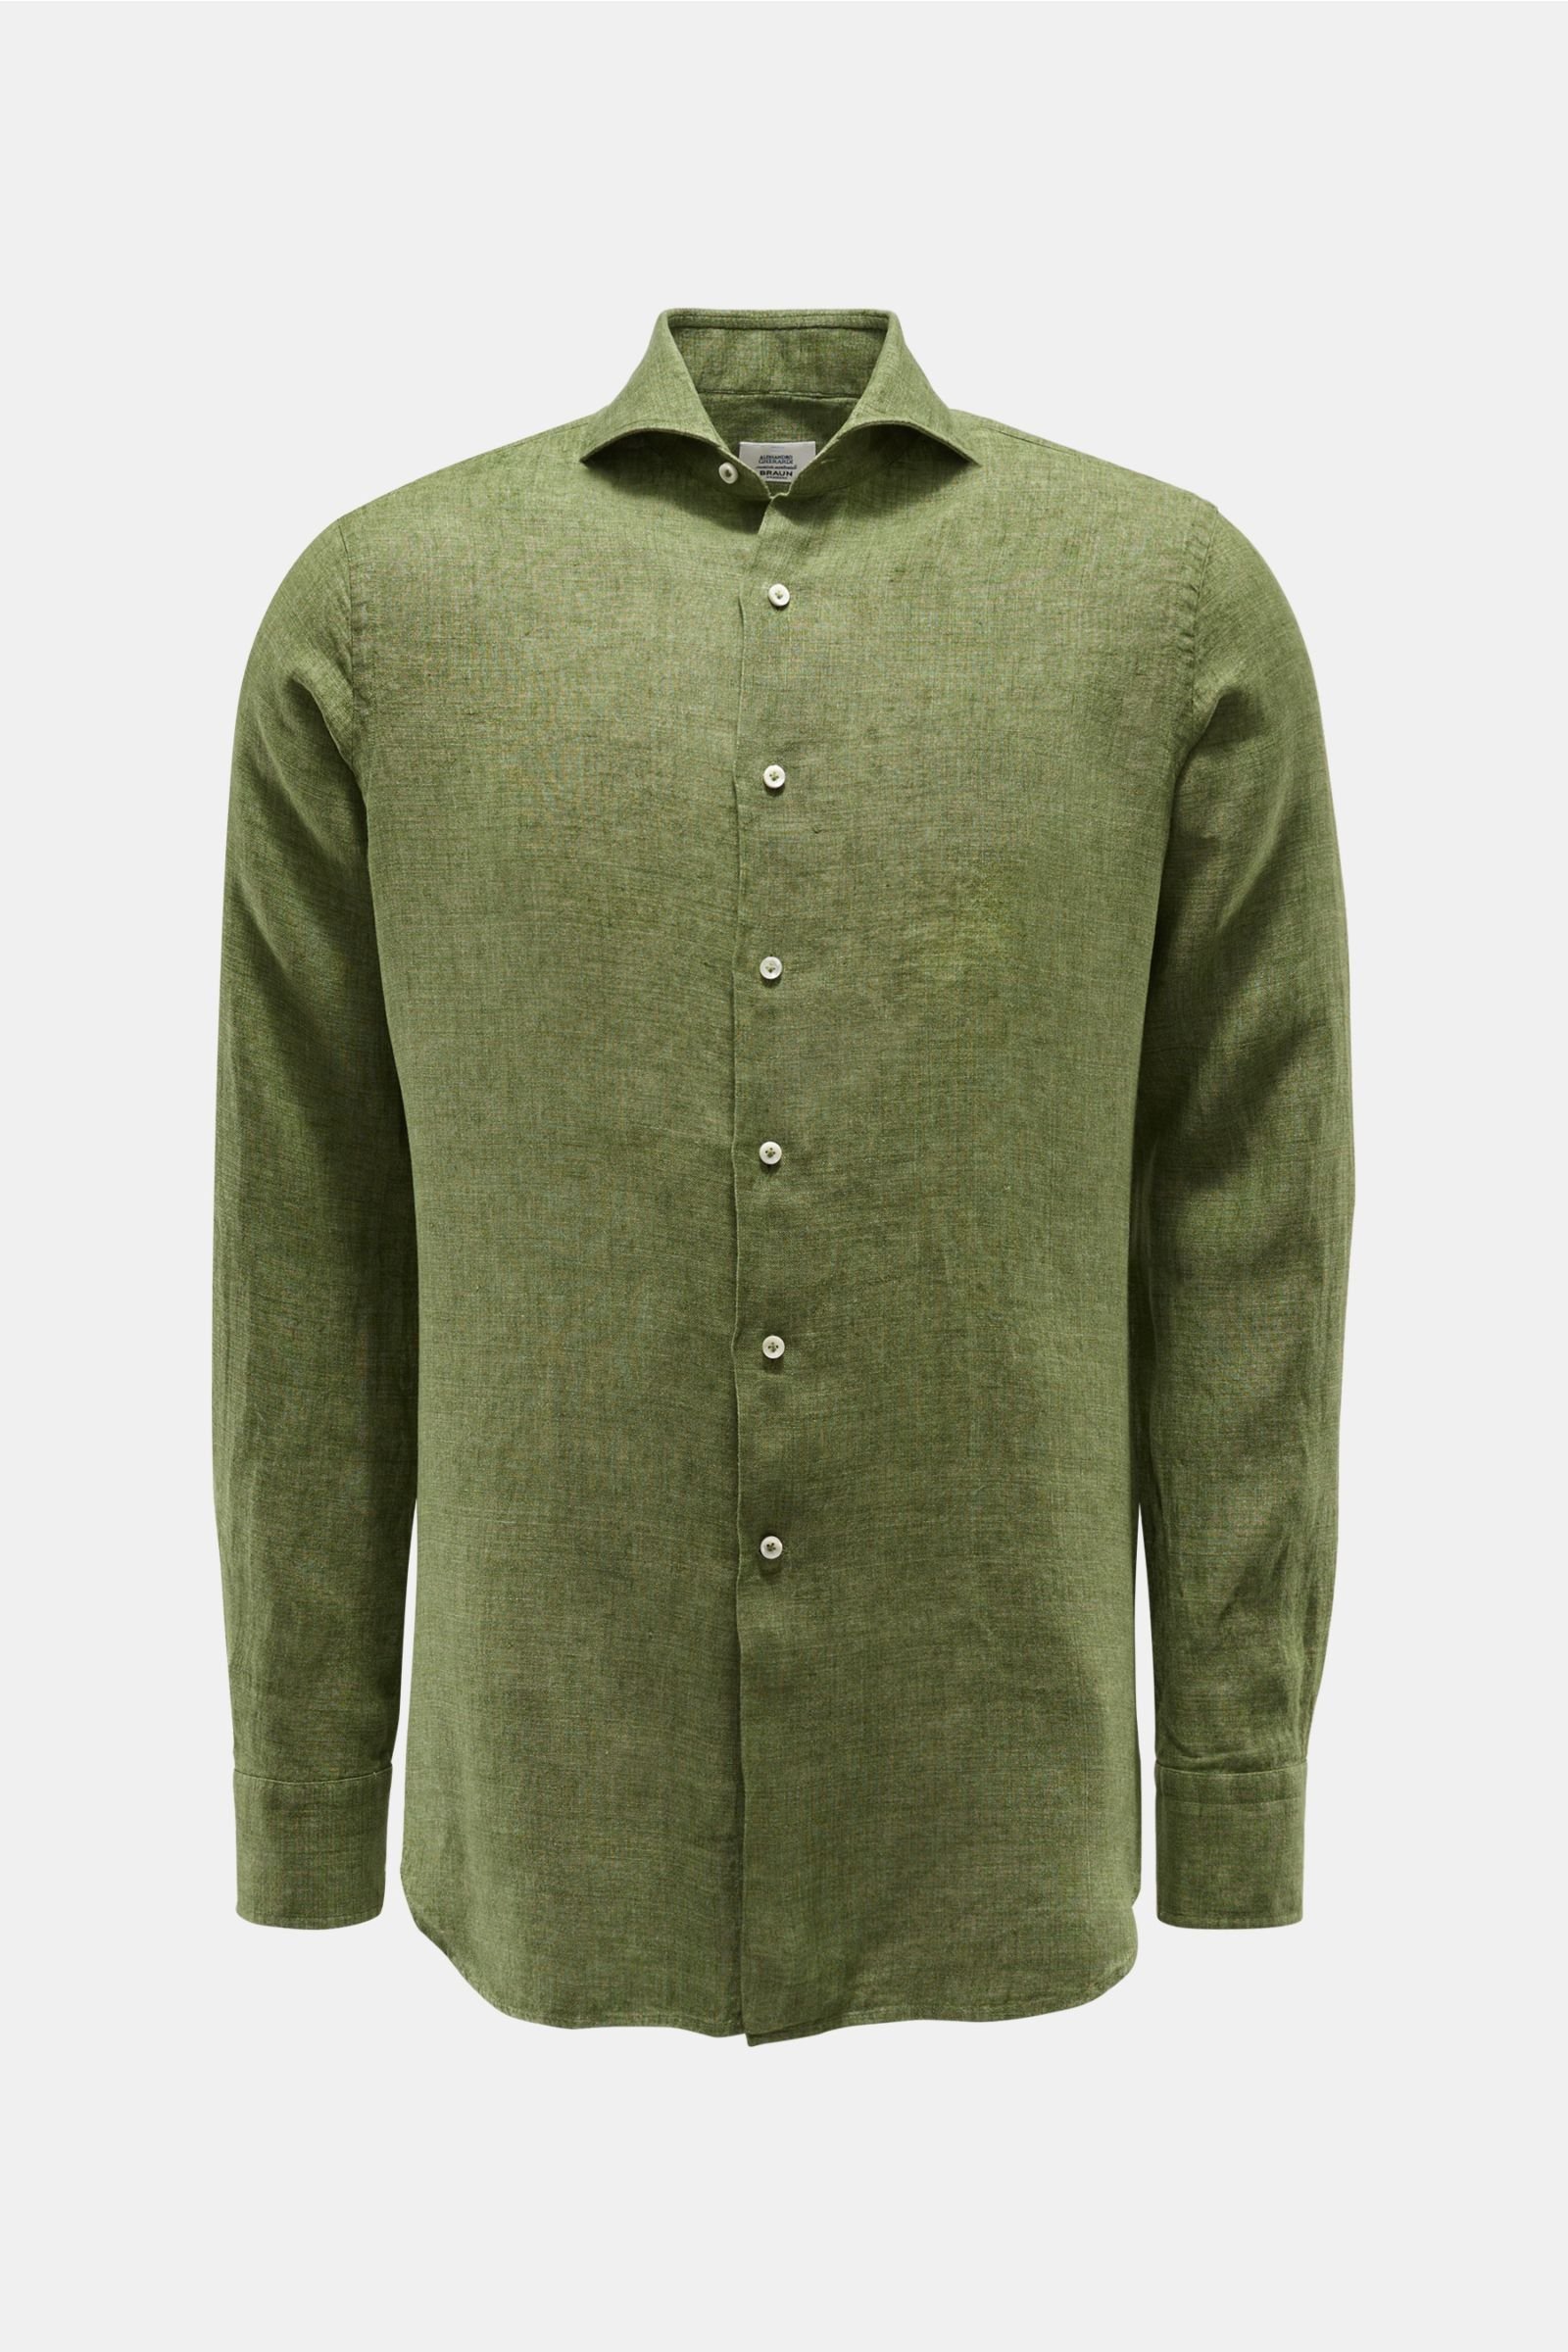 Linen shirt shark collar green